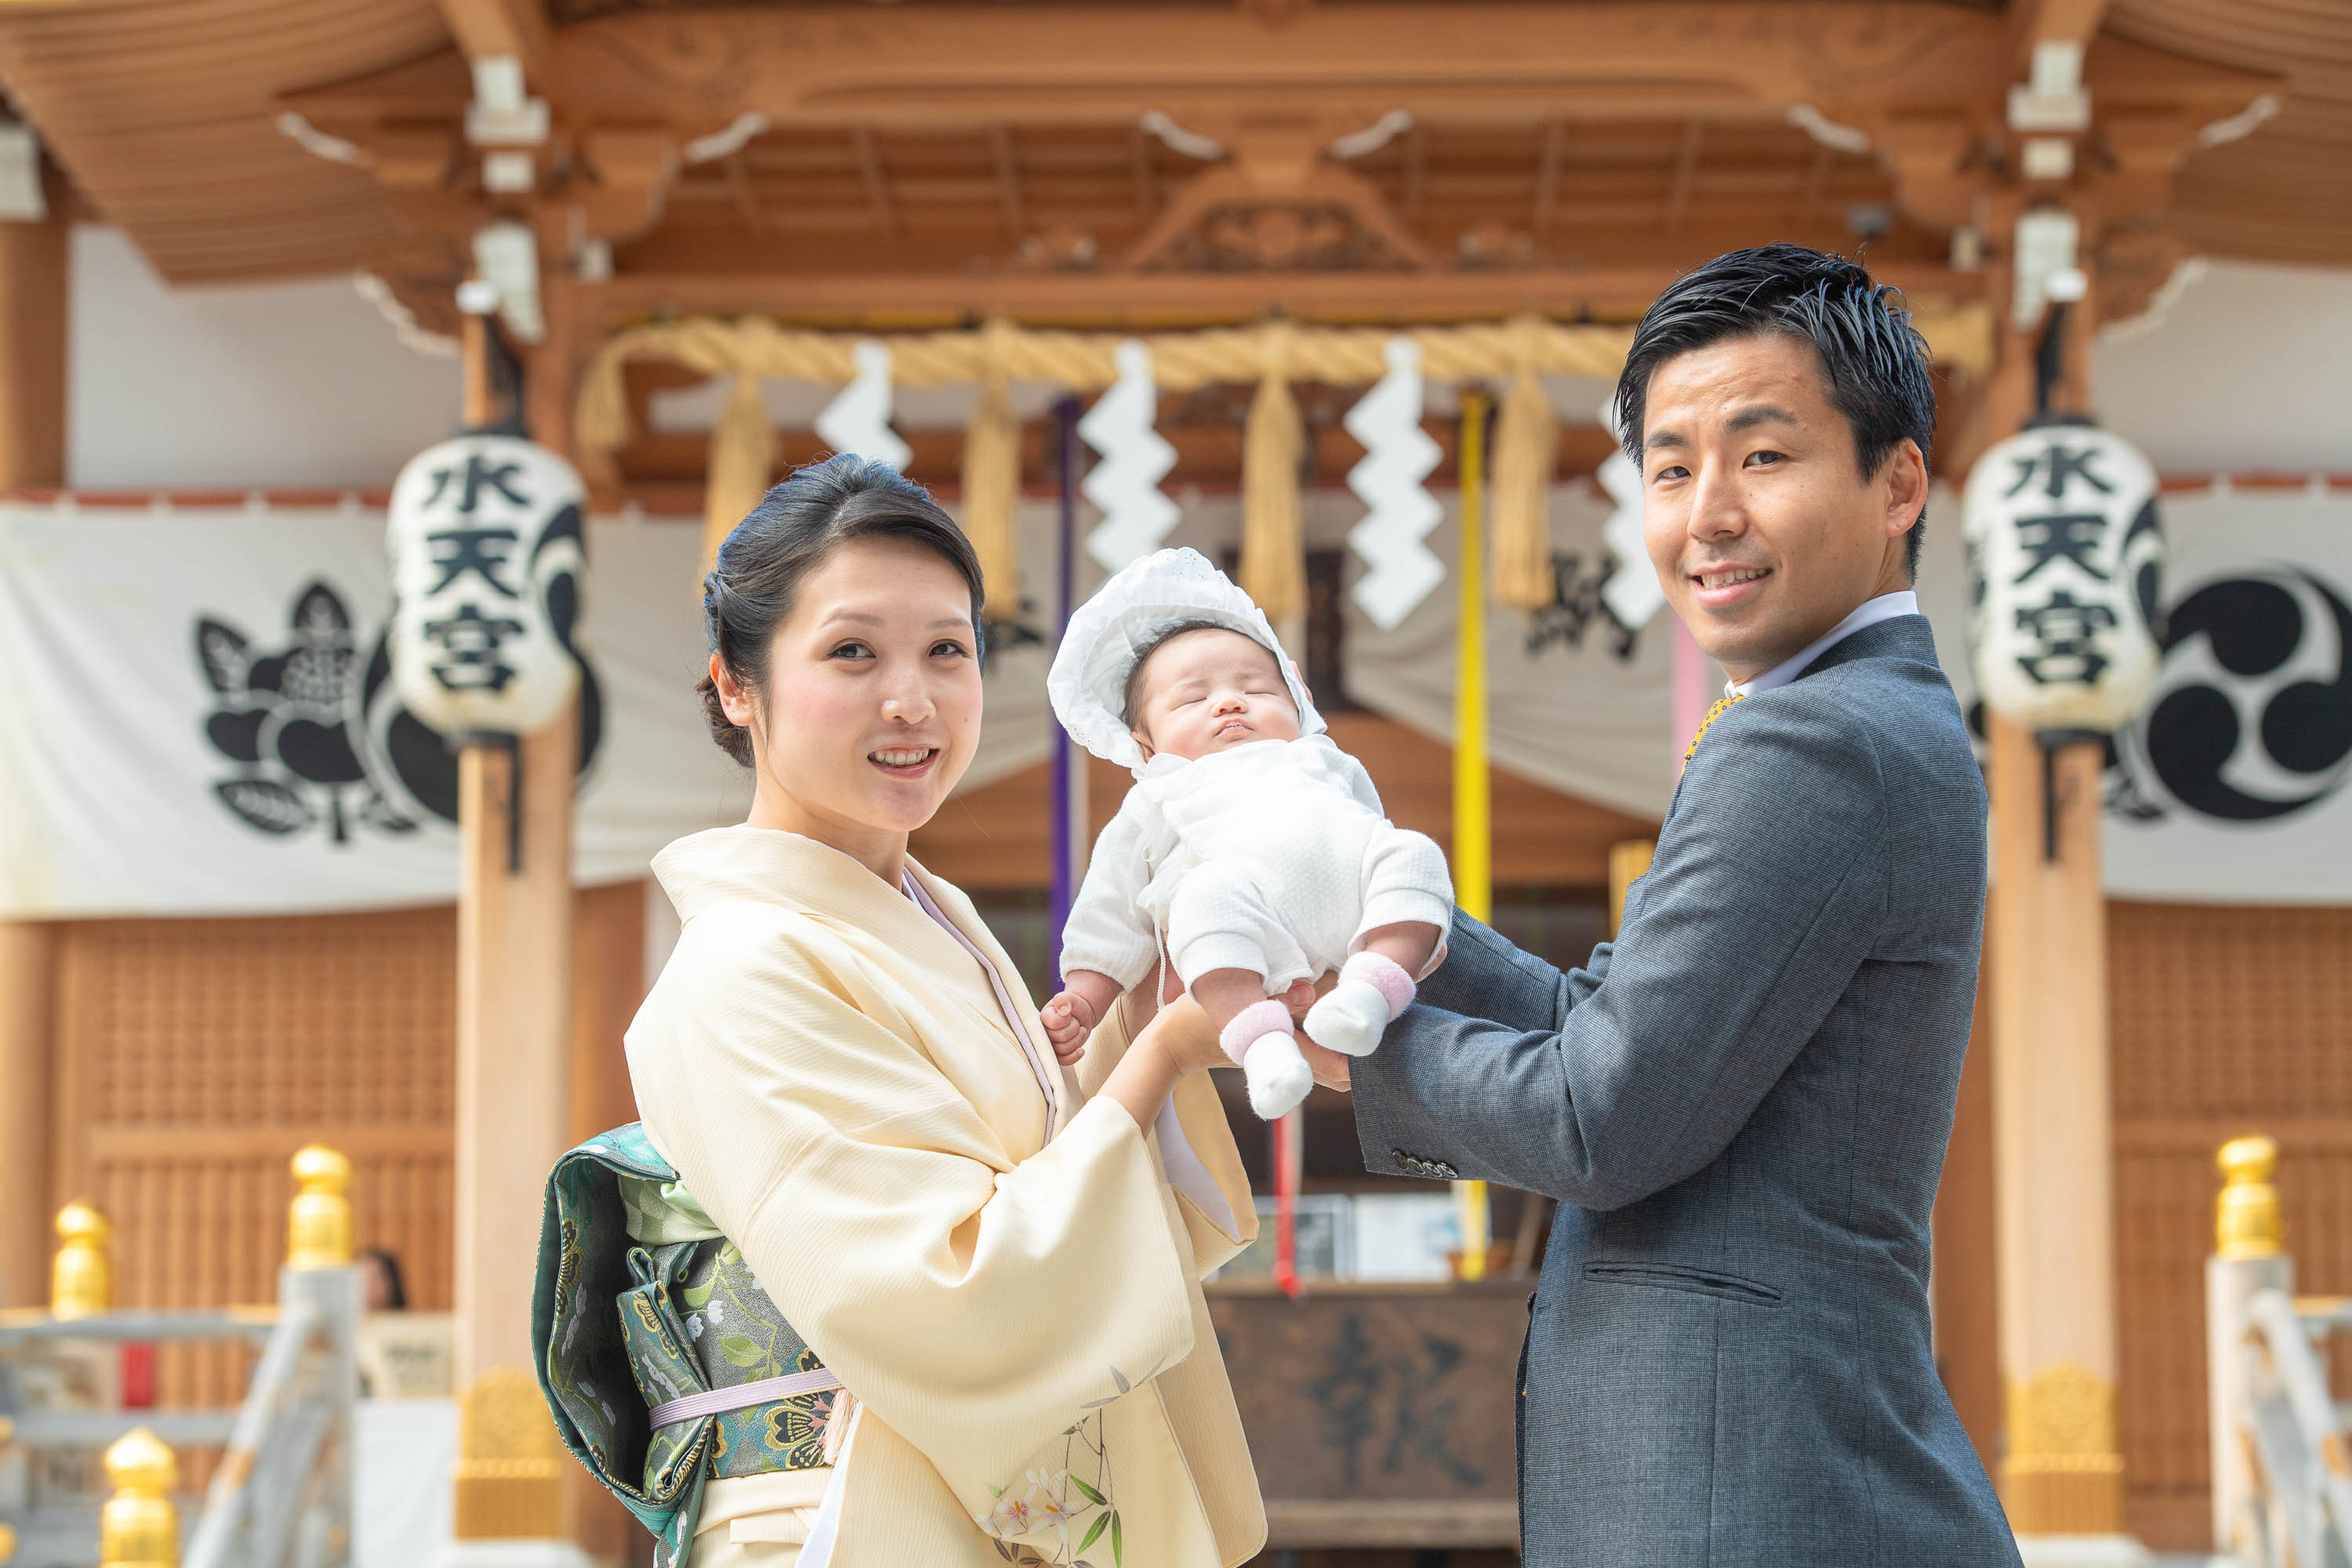 赤ちゃんを手で持ち上げ抱くスーツ姿の男性と横に立つ和装の女性